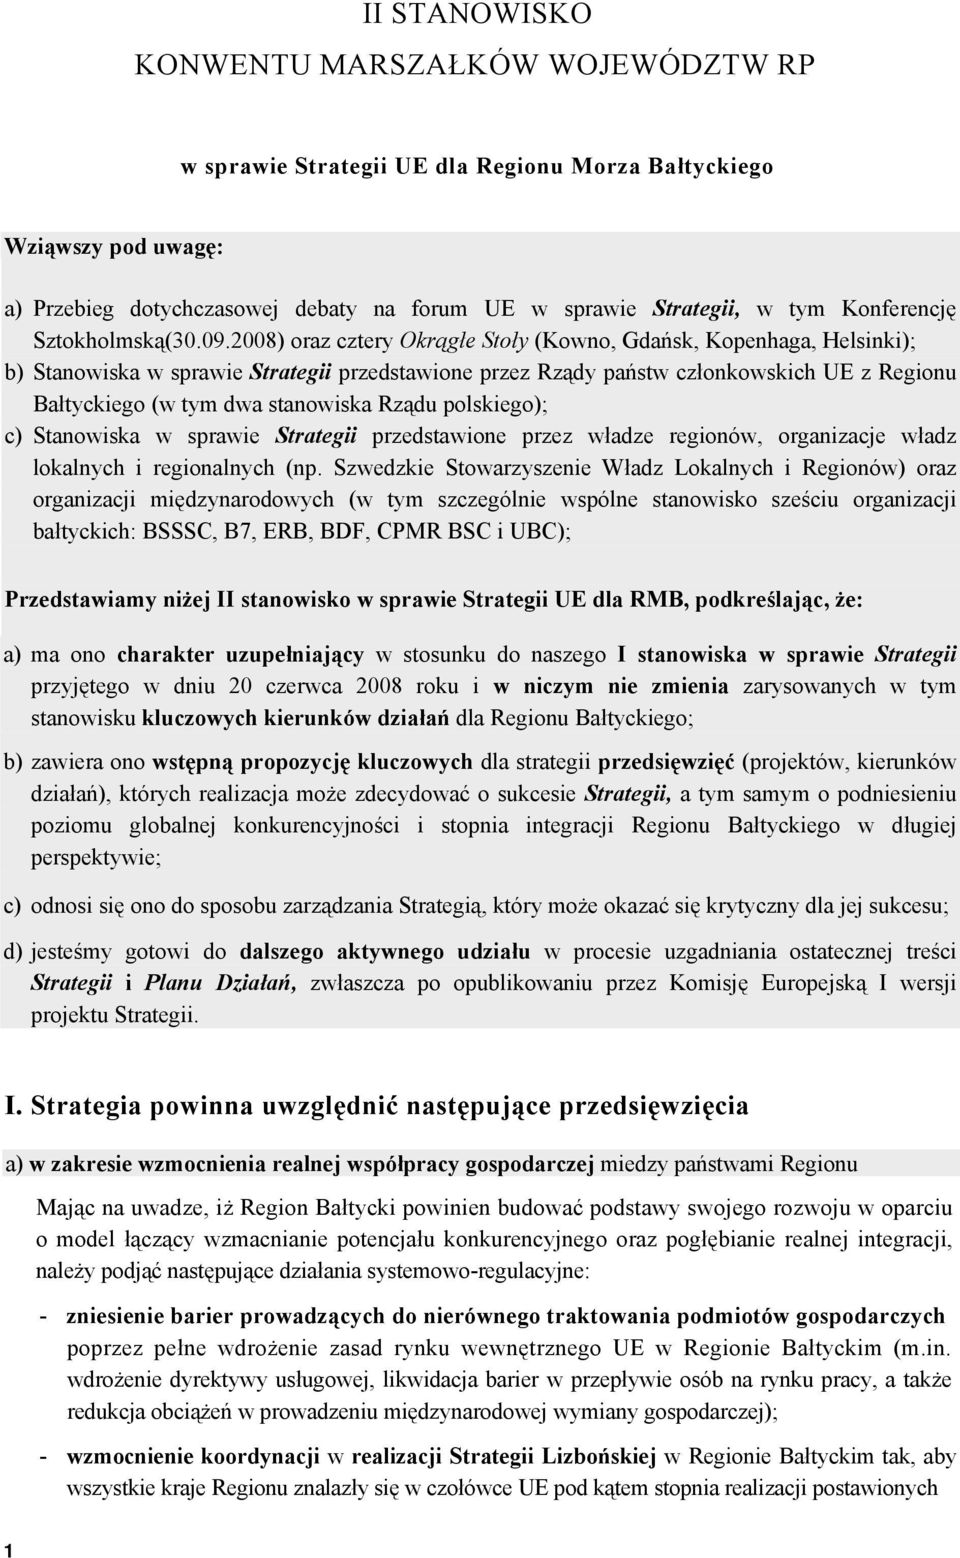 2008) oraz cztery Okrągłe Stoły (Kowno, Gdańsk, Kopenhaga, Helsinki); b) Stanowiska w sprawie Strategii przedstawione przez Rządy państw członkowskich UE z Regionu Bałtyckiego (w tym dwa stanowiska